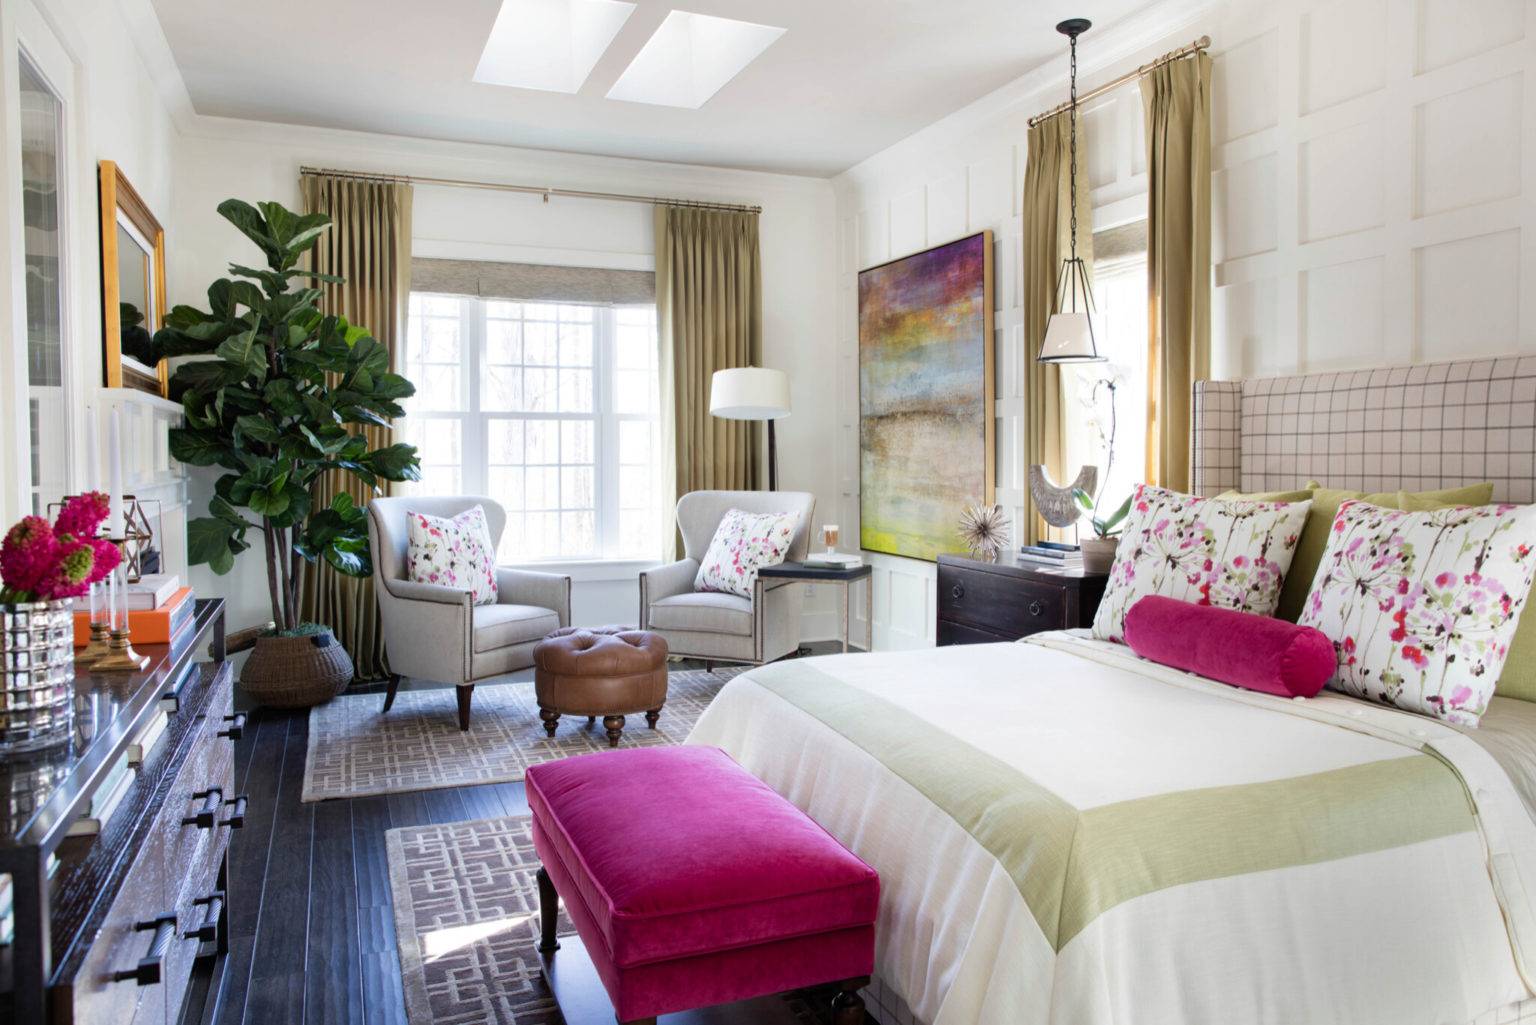 Màu hồng nóng là một sự lựa chọn màu sắc linh hoạt khi trang trí nhà mùa hè.